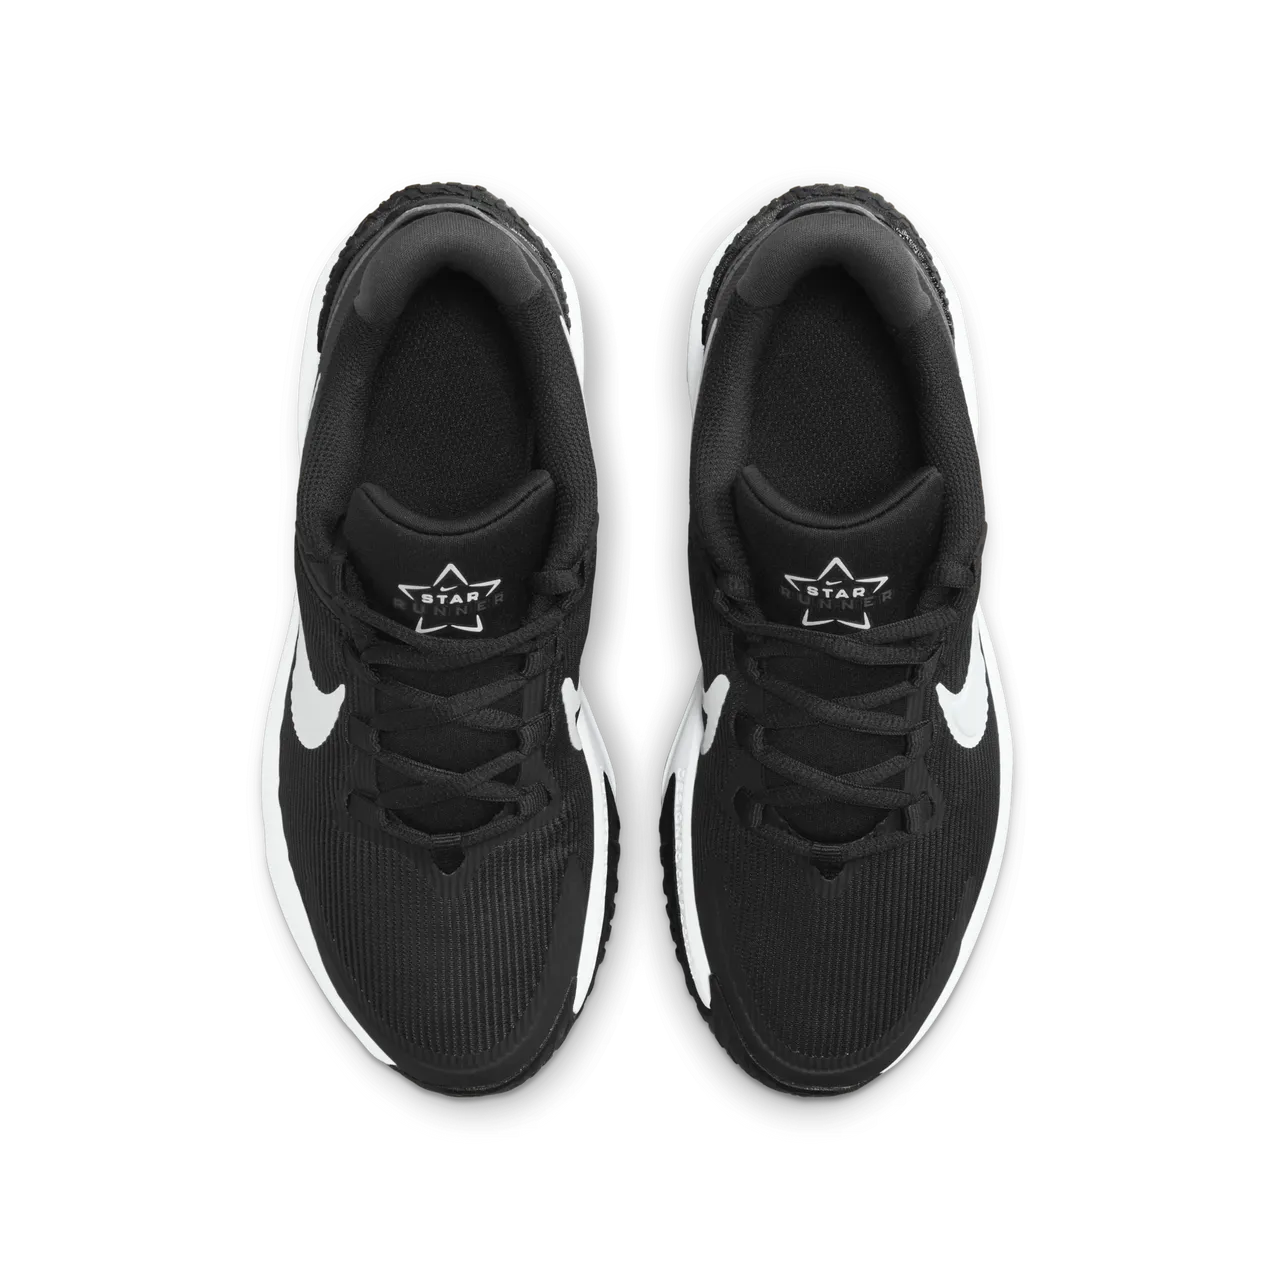 Nike Star Runner 4 Older Kids' Road Running Shoes - Black